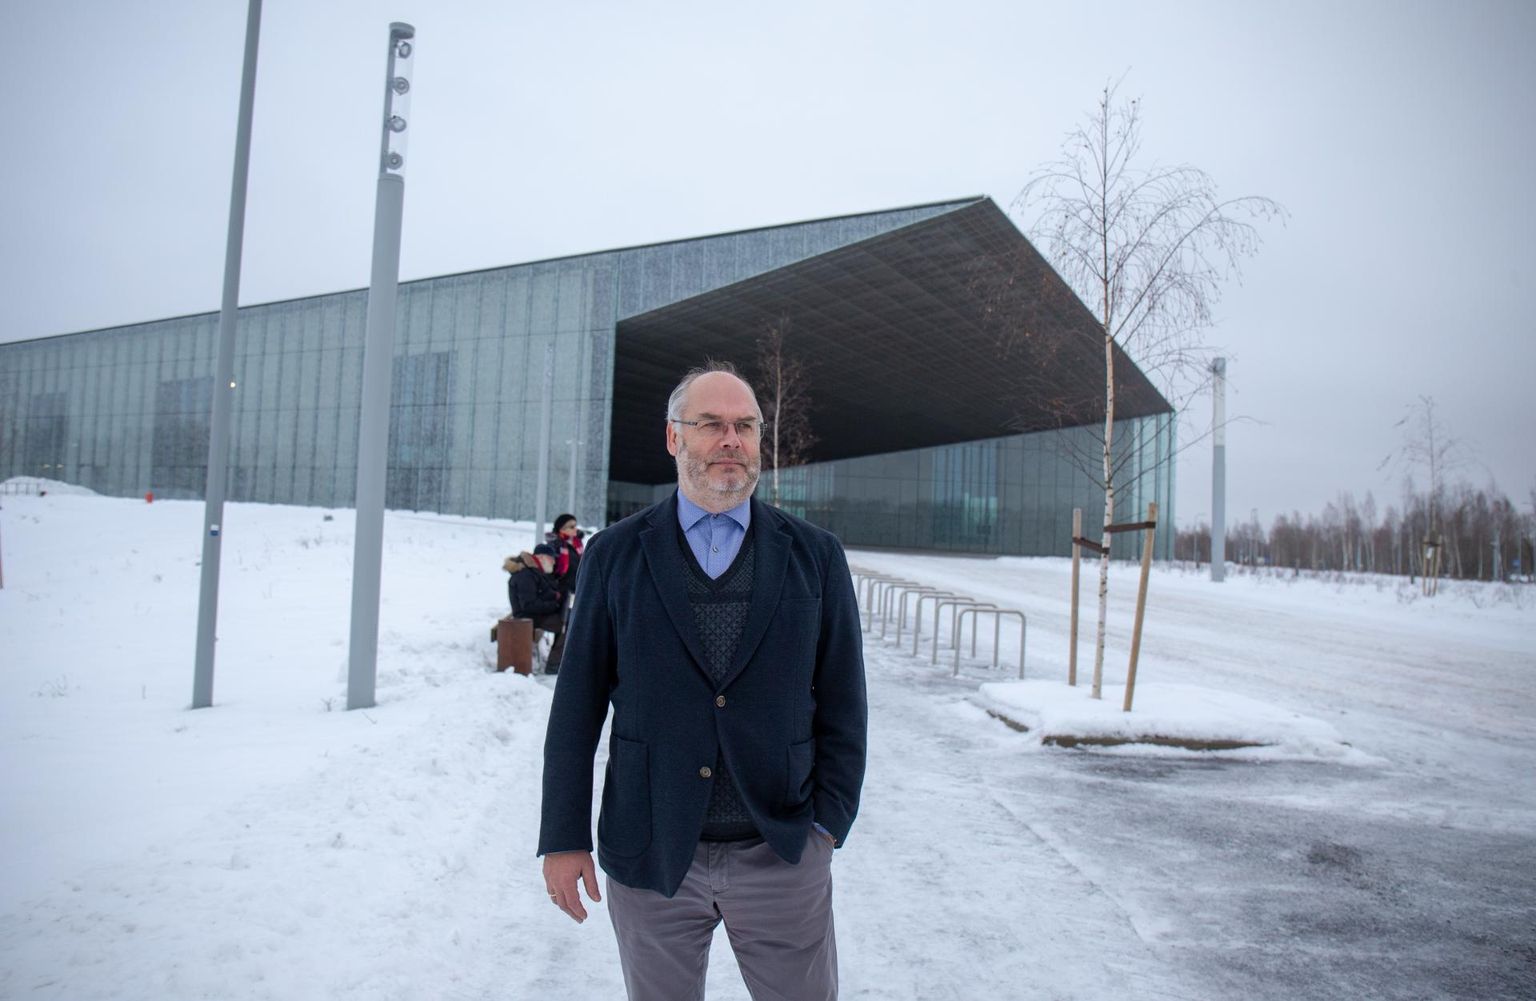 Eesti Rahva Muuseumi direktoril Alar Karisel on põhjust rahul olla, kuna tema alluvate töötasu on uuest aastast kõrgem kui enamikul Eesti kultuuritöötajatel.